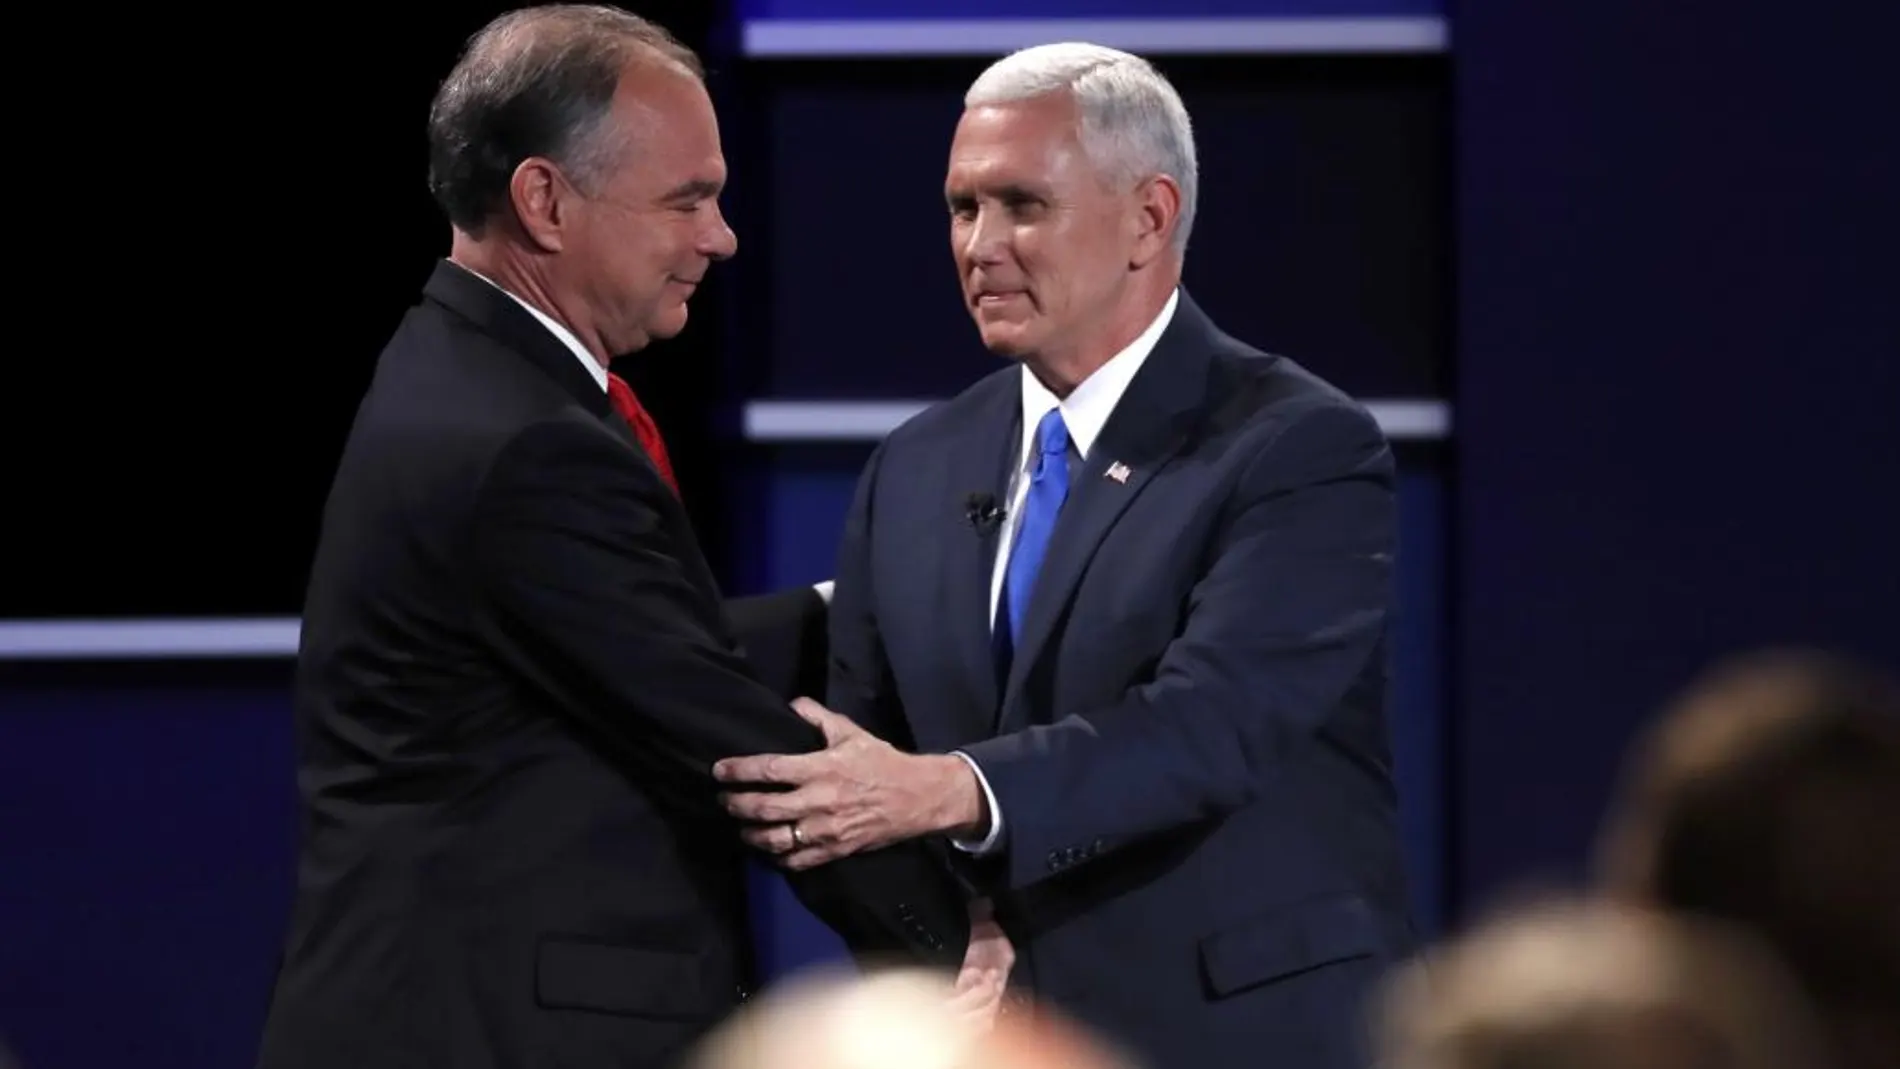 Los candidatos a vice presidente, el demócrata Tim Kaine y el republicano, Mike Pence, se saludan tras finalizar el debate